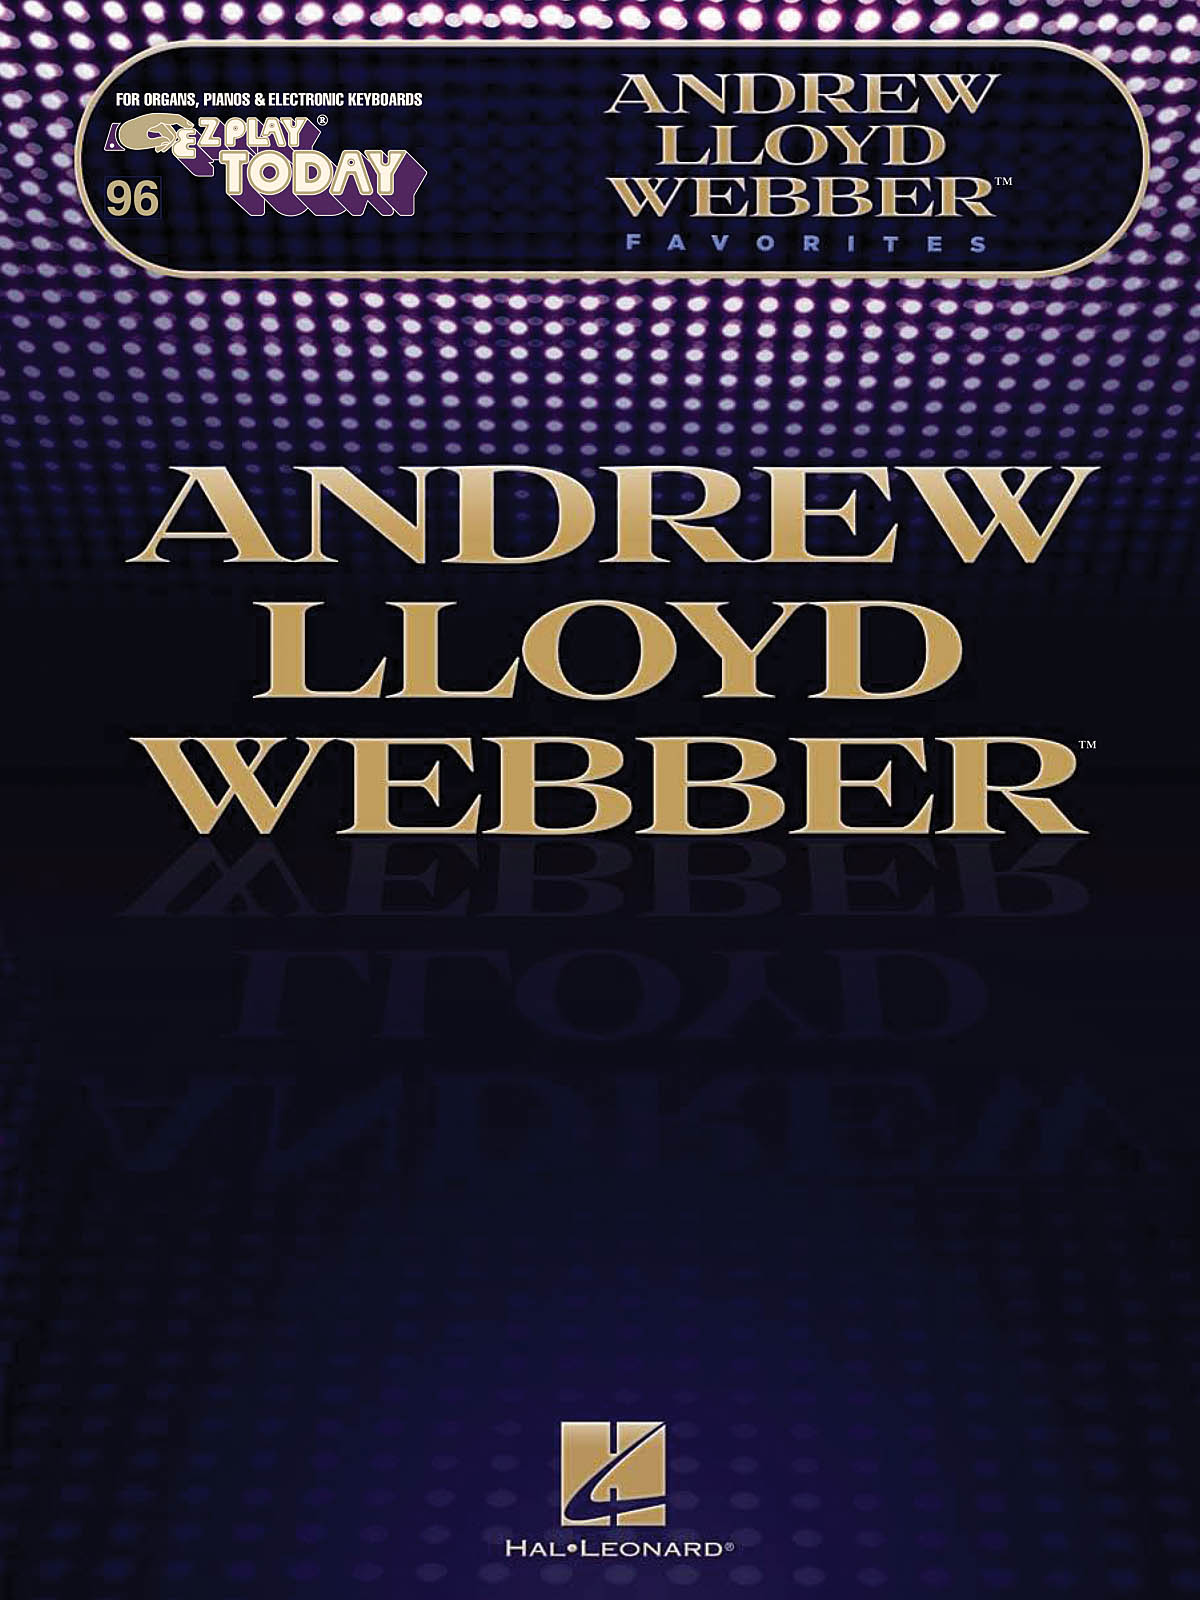 Andrew Lloyd Webber Favorites - E-Z Play Today Volume 246 - noty pro klavír